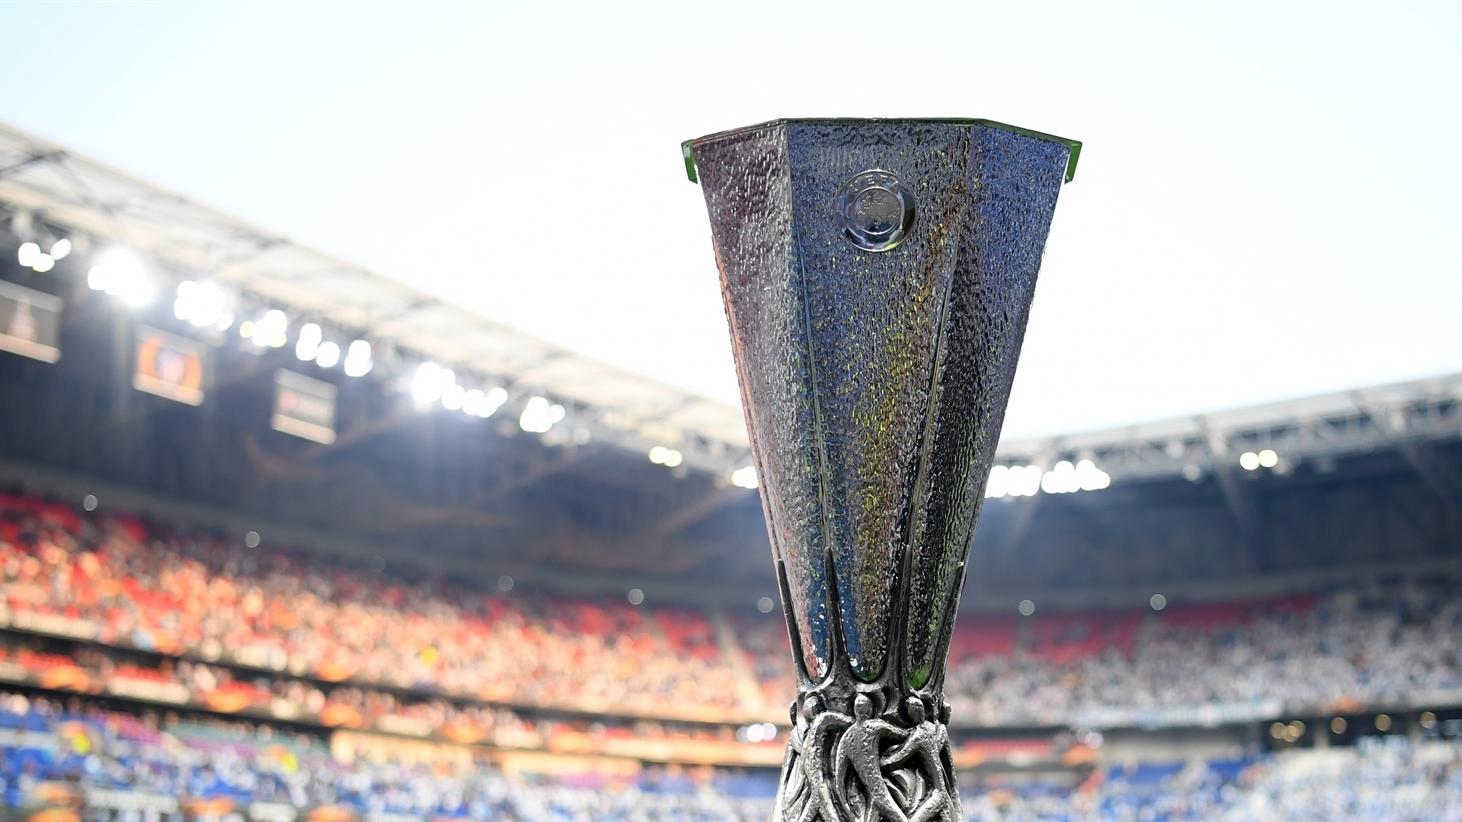 Έρχεται το Europa League στην Ελλάδα; – Σενάριο για Final 8 στην Αθήνα